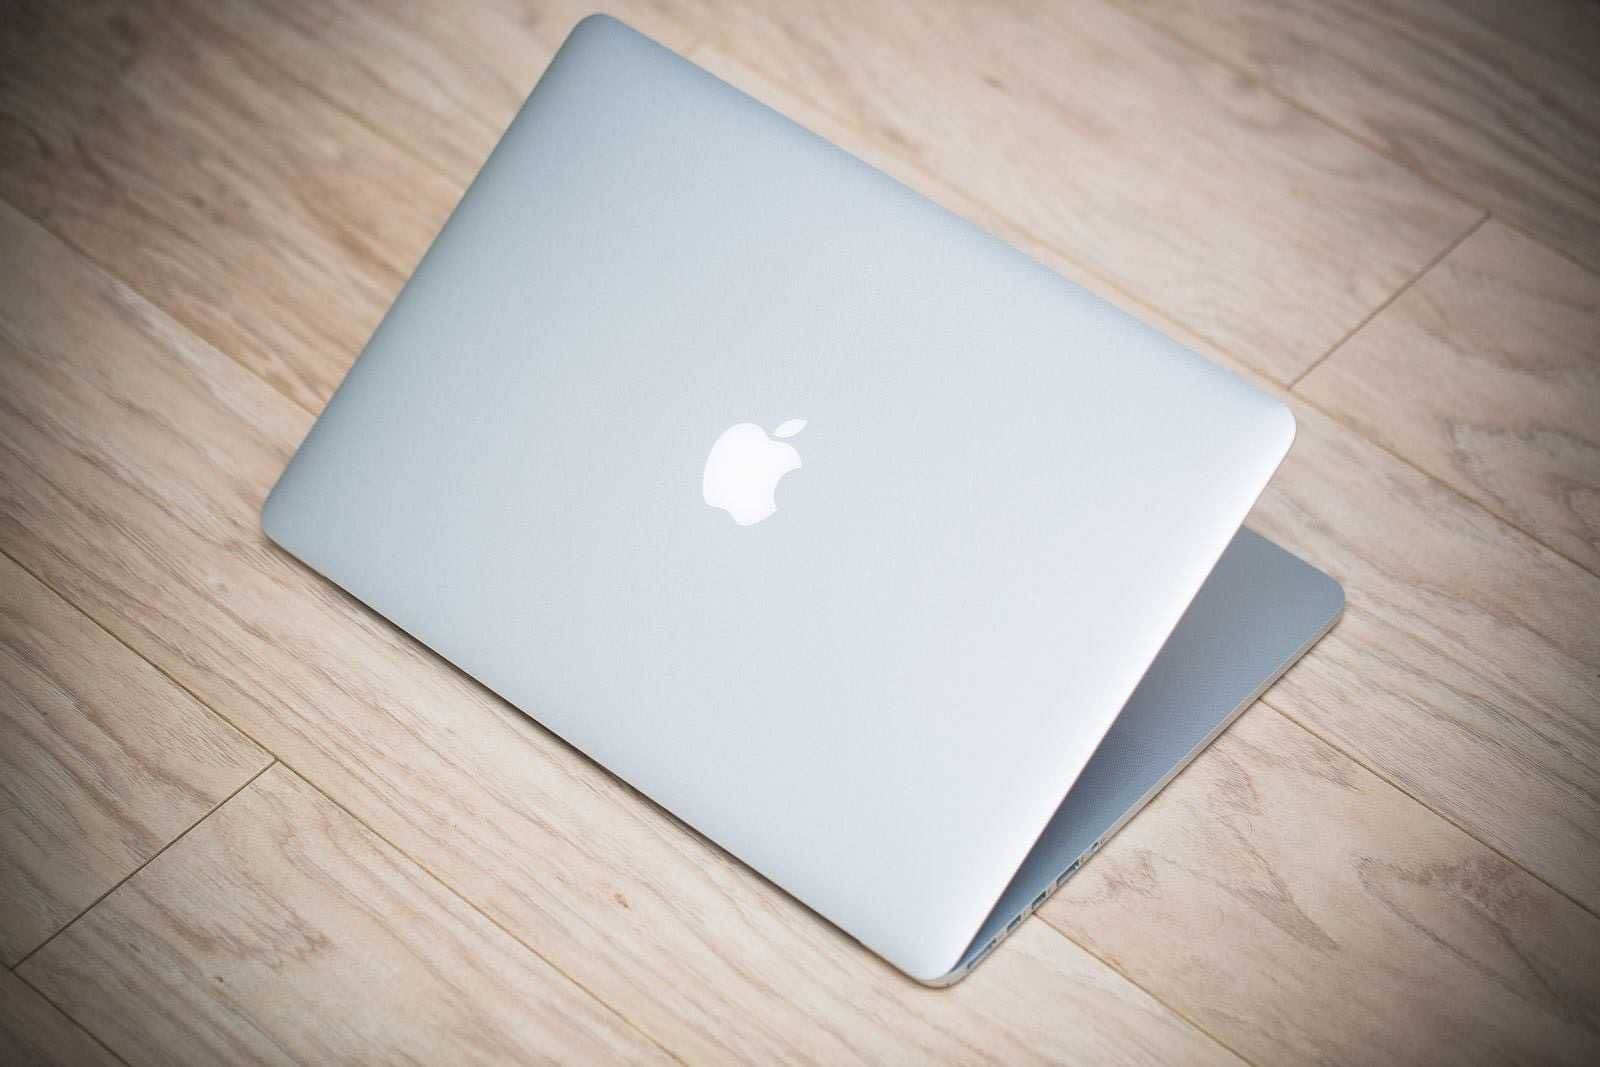 MacBook Pro A1398 i7 512 SSD 8GB Retina Mid 2012 15.4" dwie grafiki